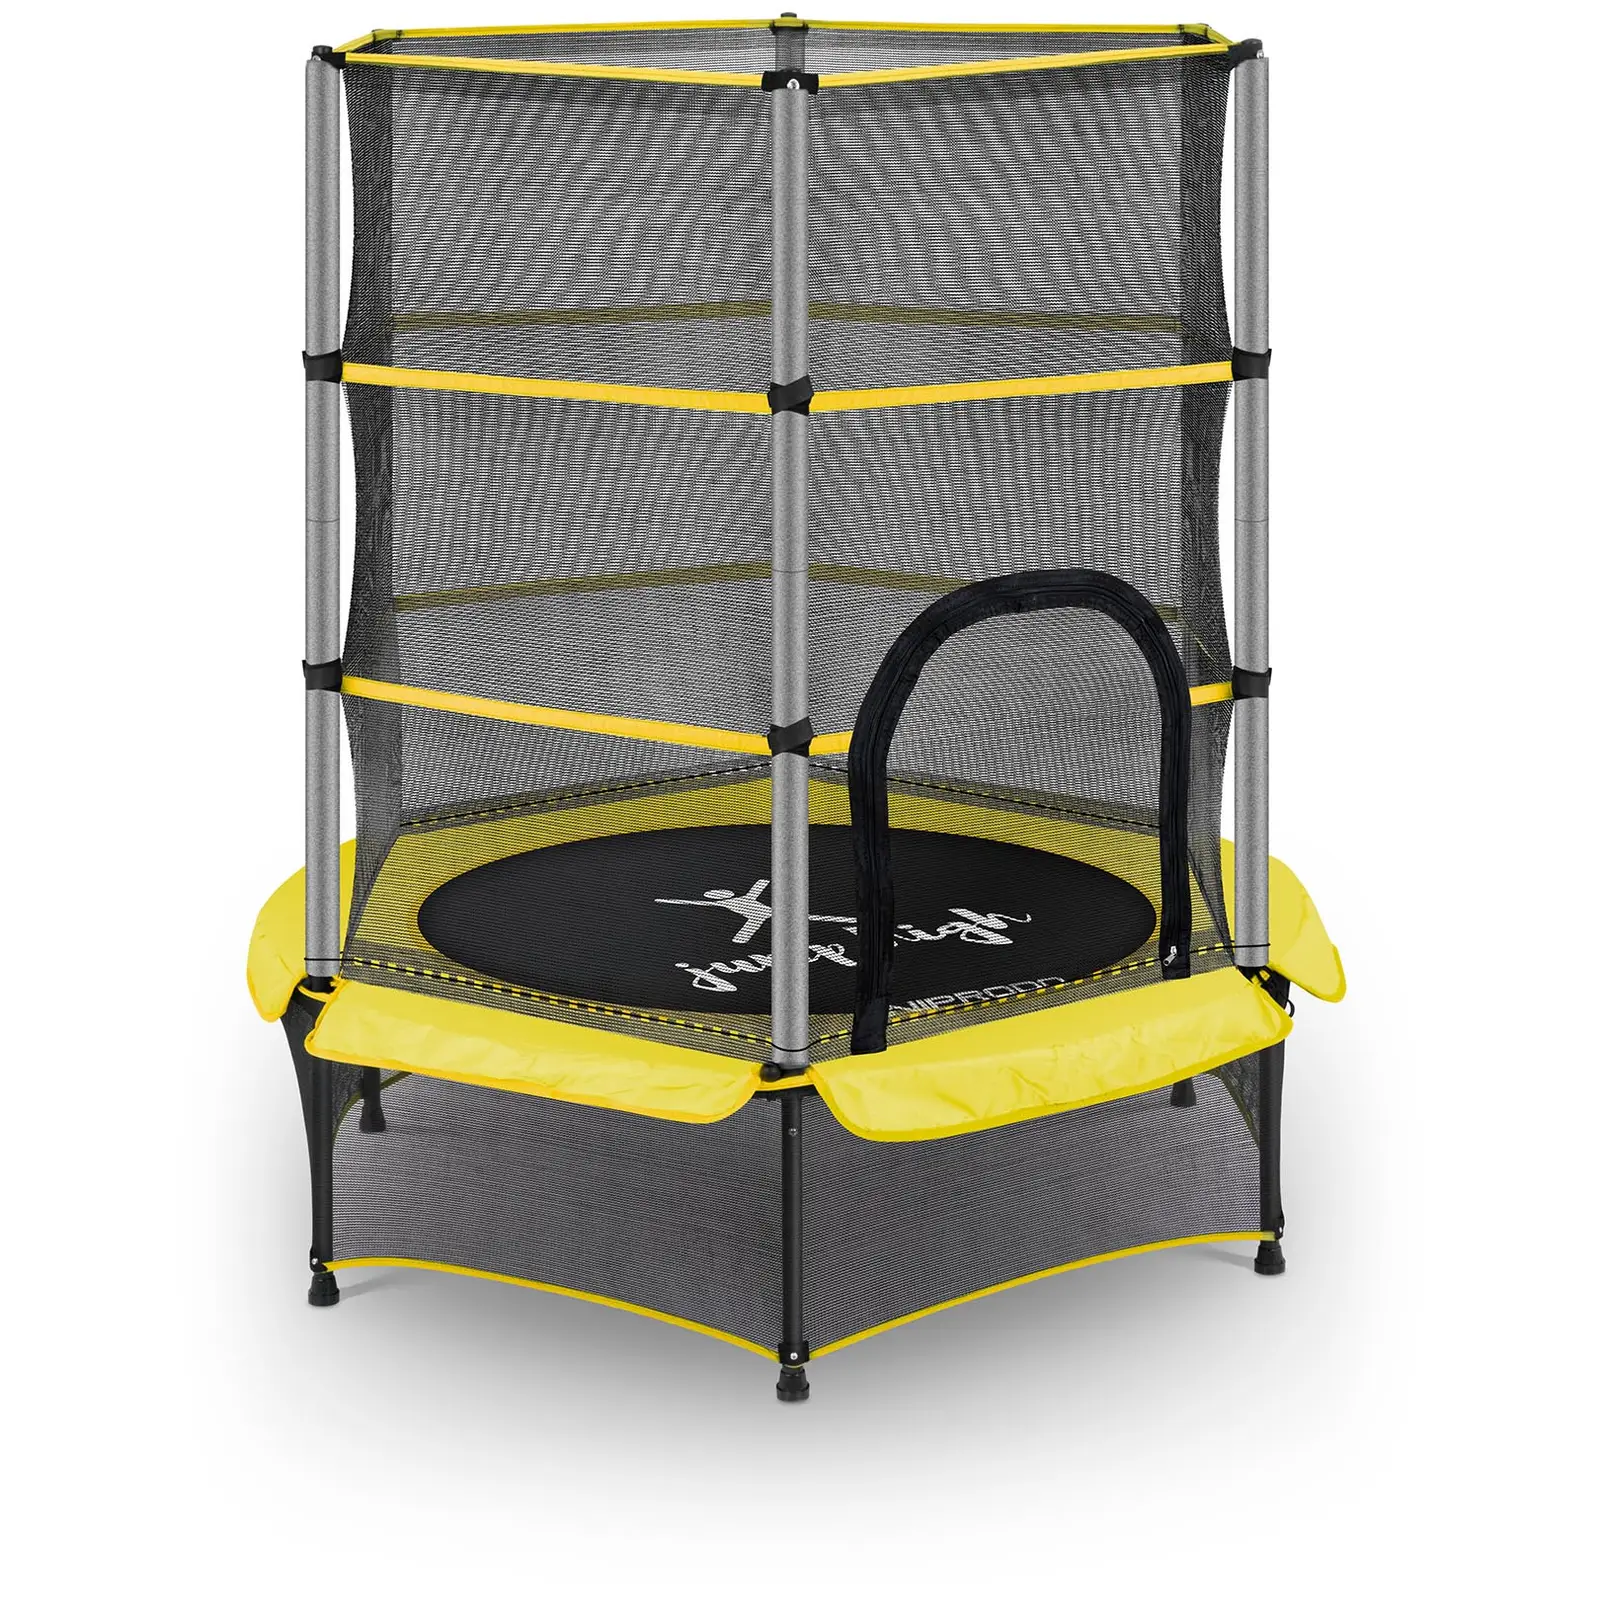 Studsmatta för barn - med säkerhetsnät - 140 cm - 50 kg - gul